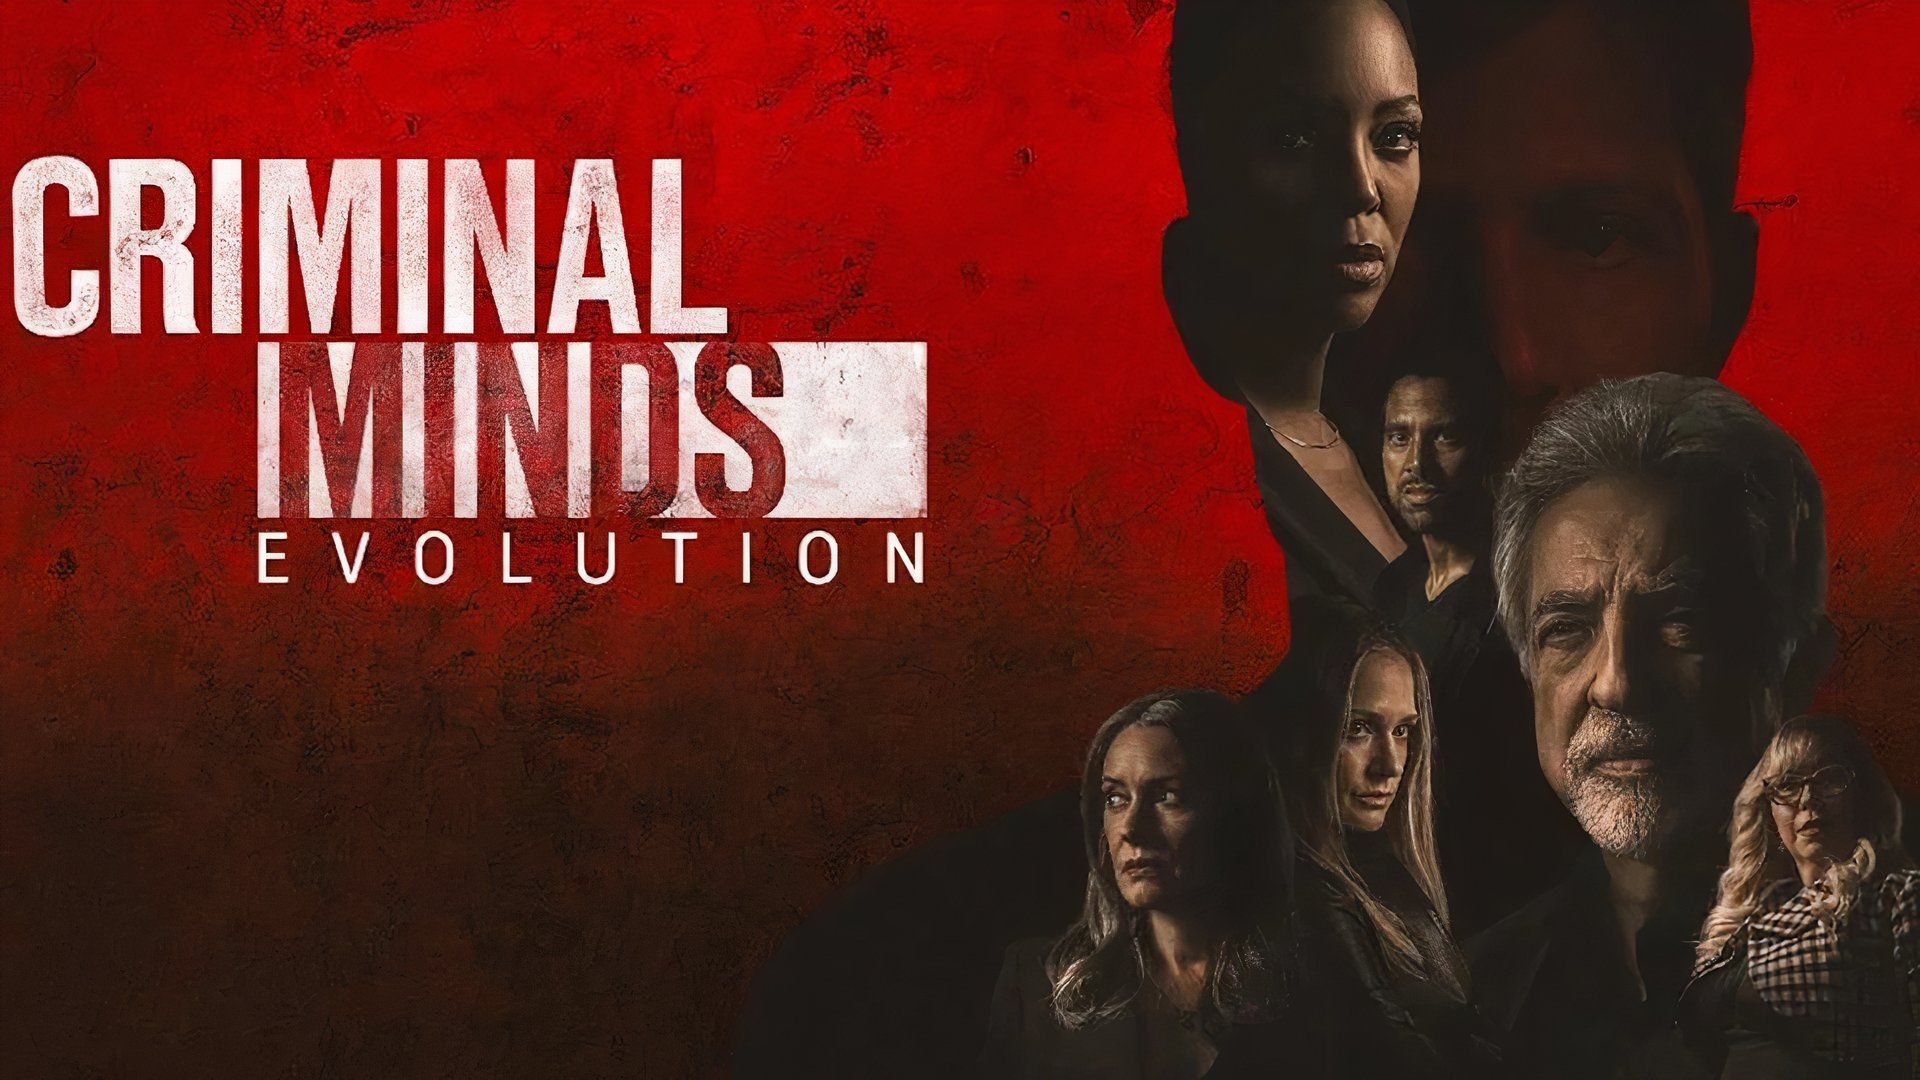 The Criminal Minds: Evolution poster